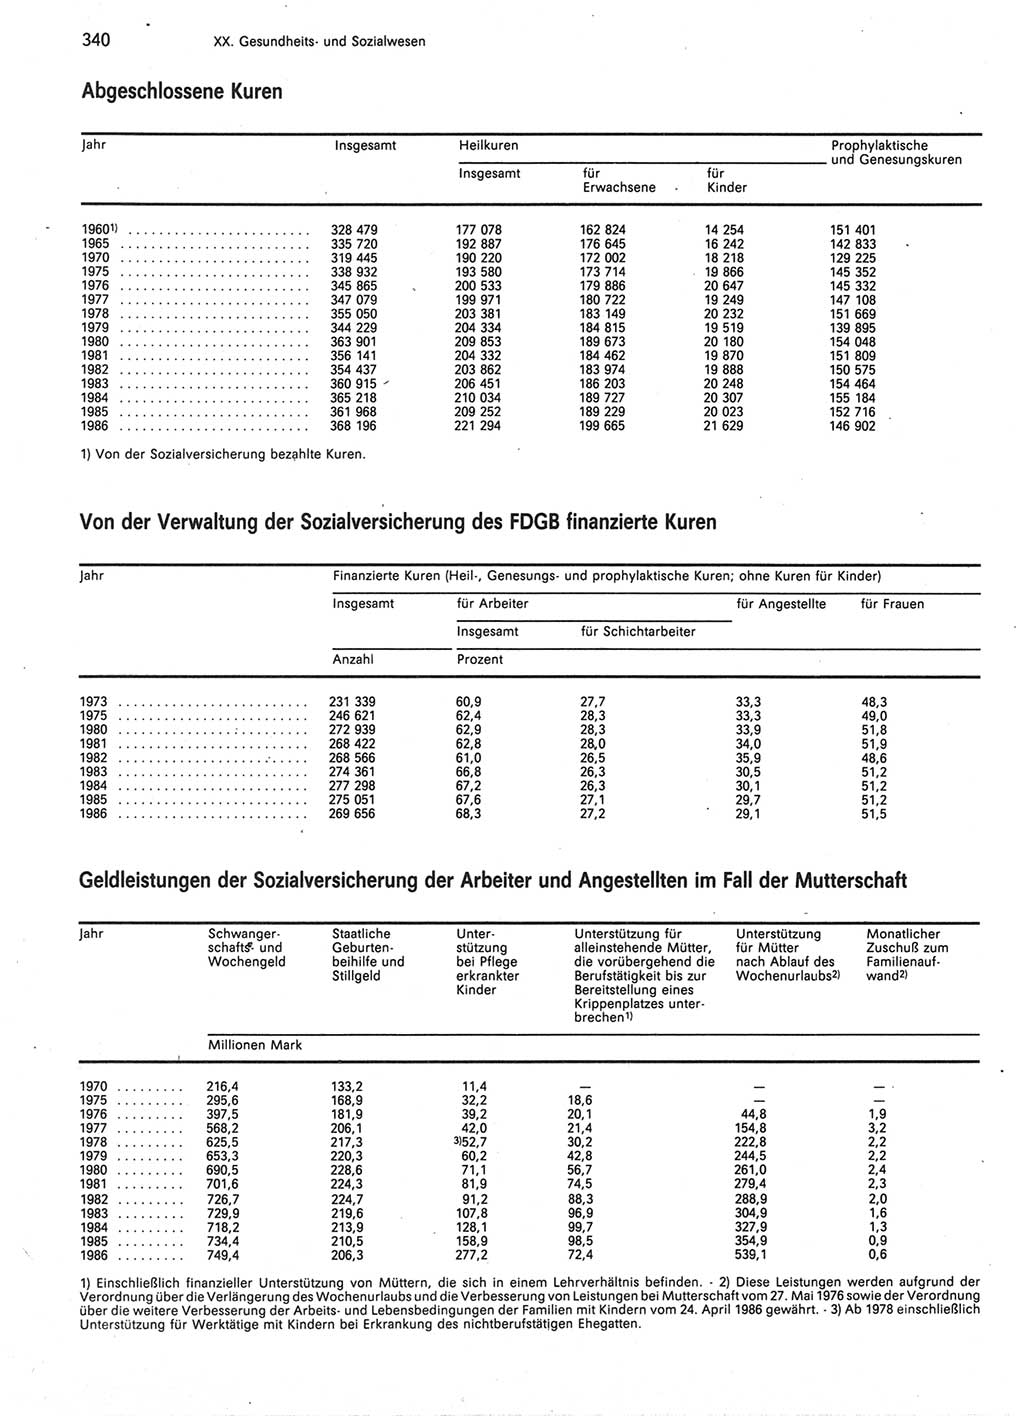 Statistisches Jahrbuch der Deutschen Demokratischen Republik (DDR) 1987, Seite 340 (Stat. Jb. DDR 1987, S. 340)